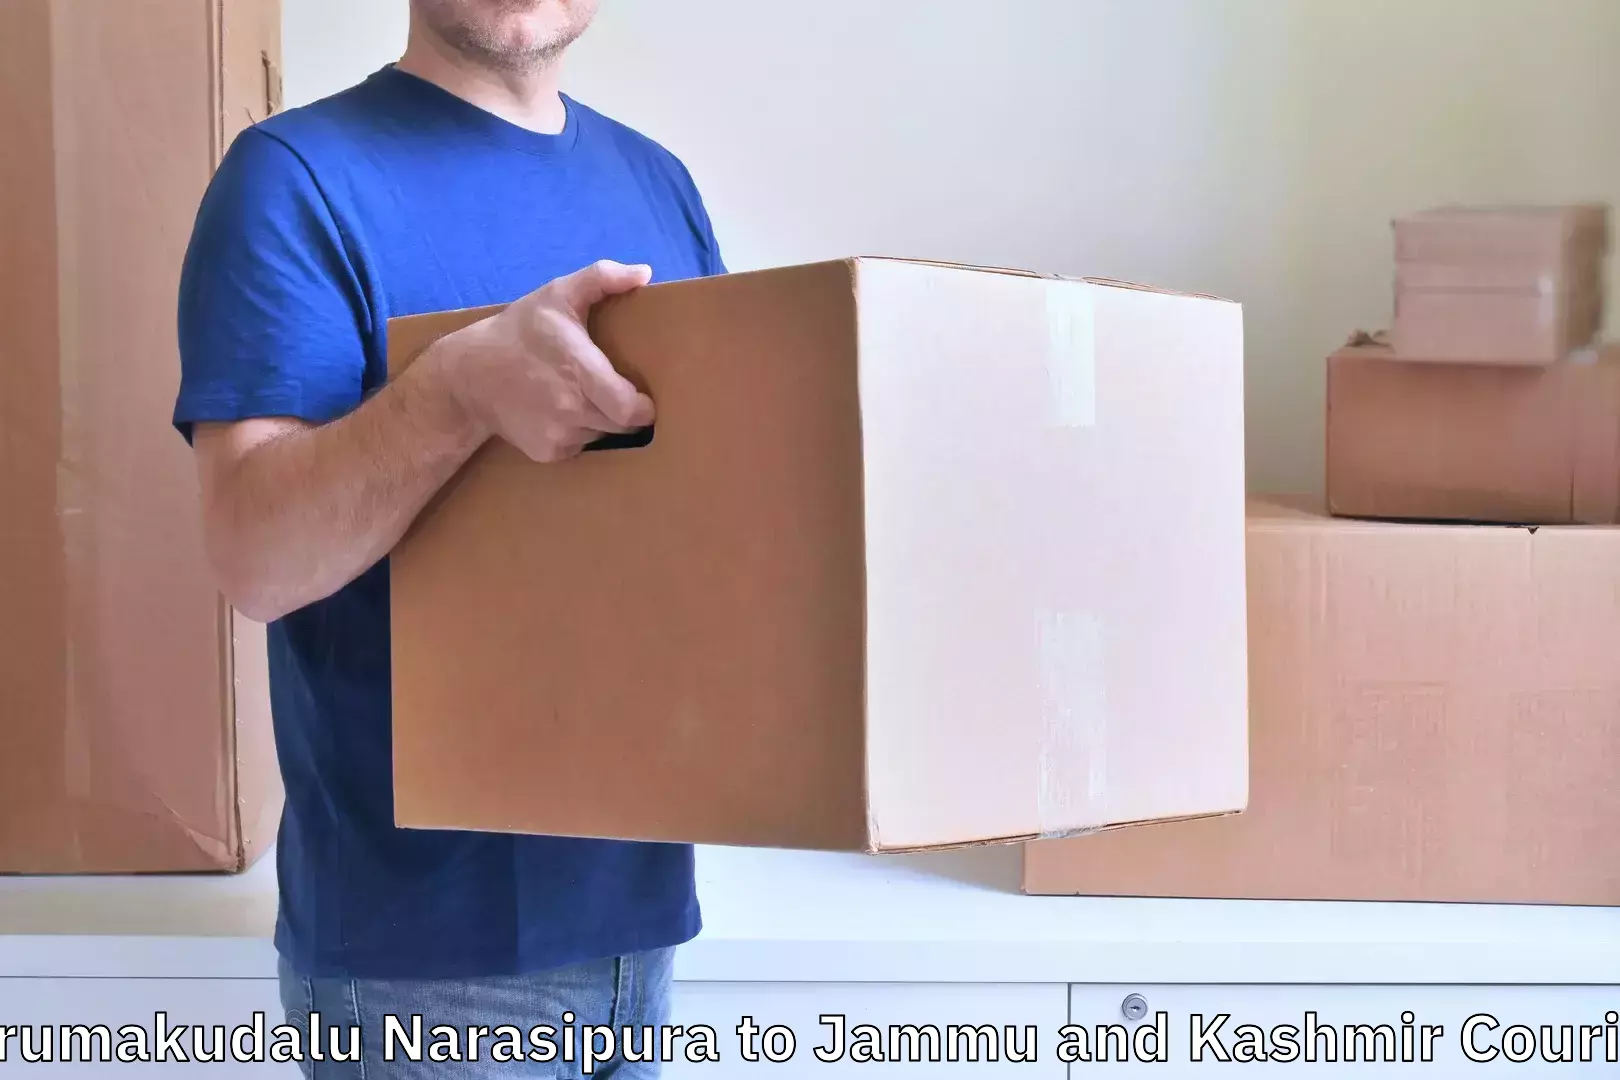 Efficient luggage delivery Tirumakudalu Narasipura to Nagrota